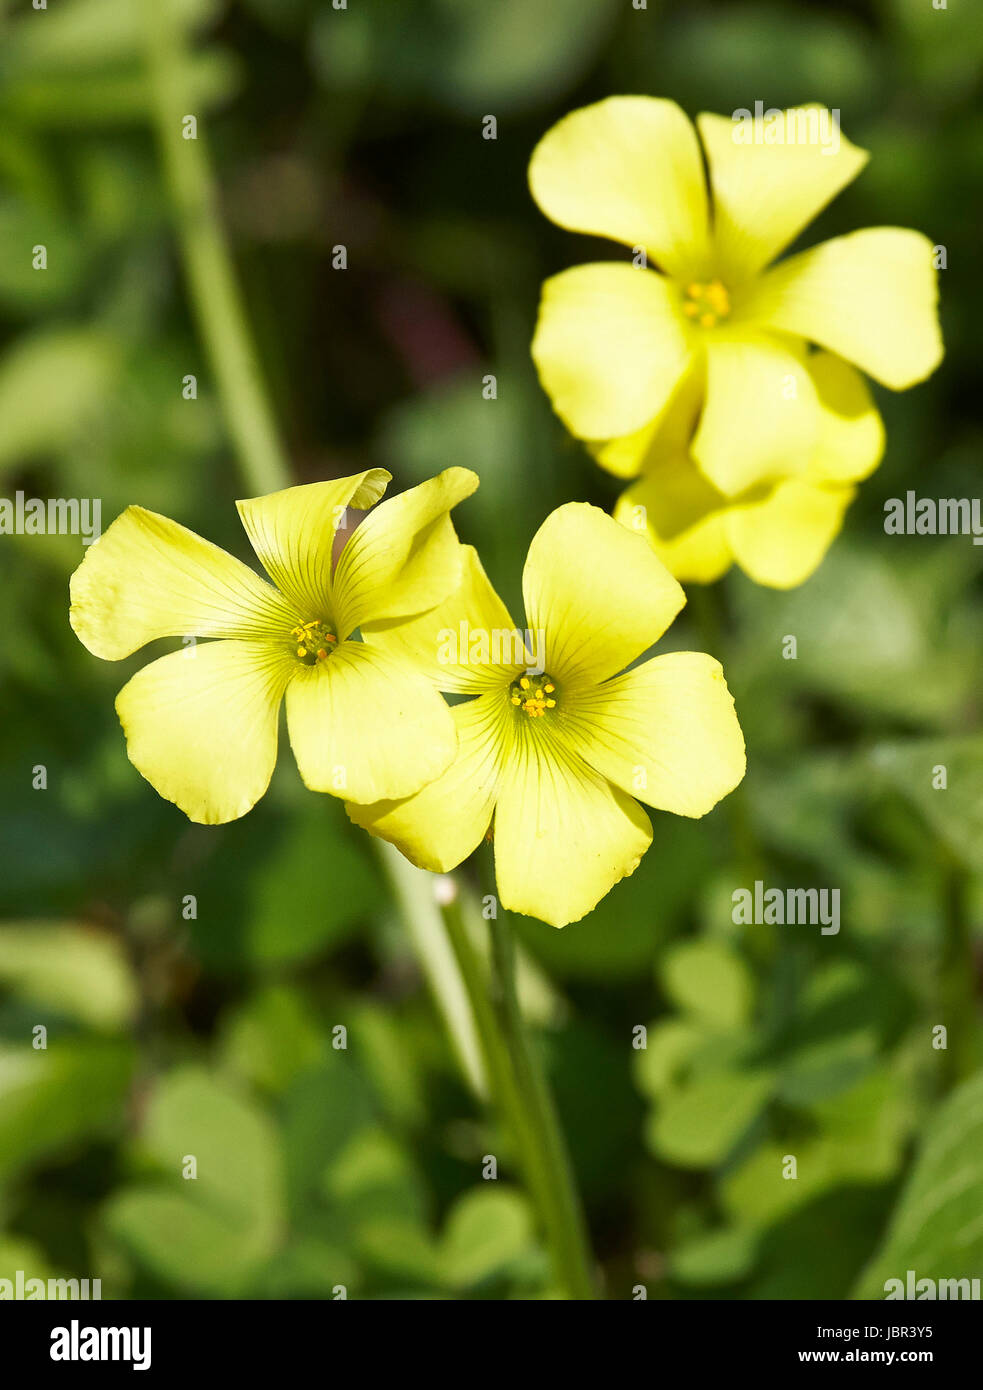 yellow trifolium in a garden in la spezia Stock Photo